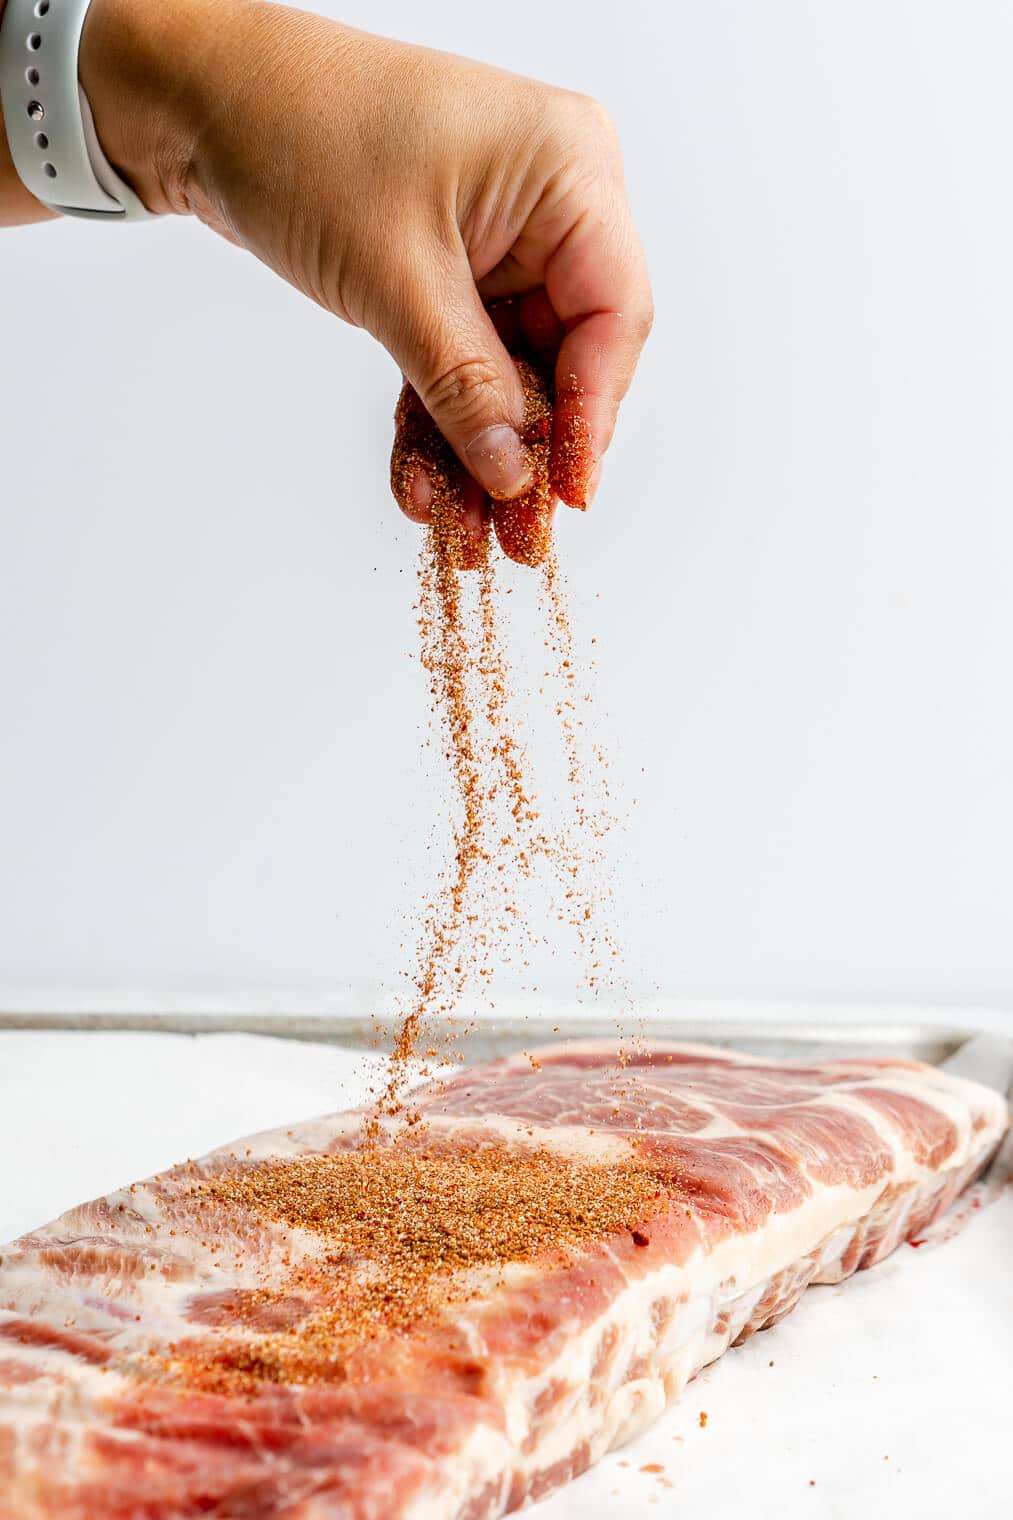 A person sprinkling BBQ spice rub onto pork spare ribs.